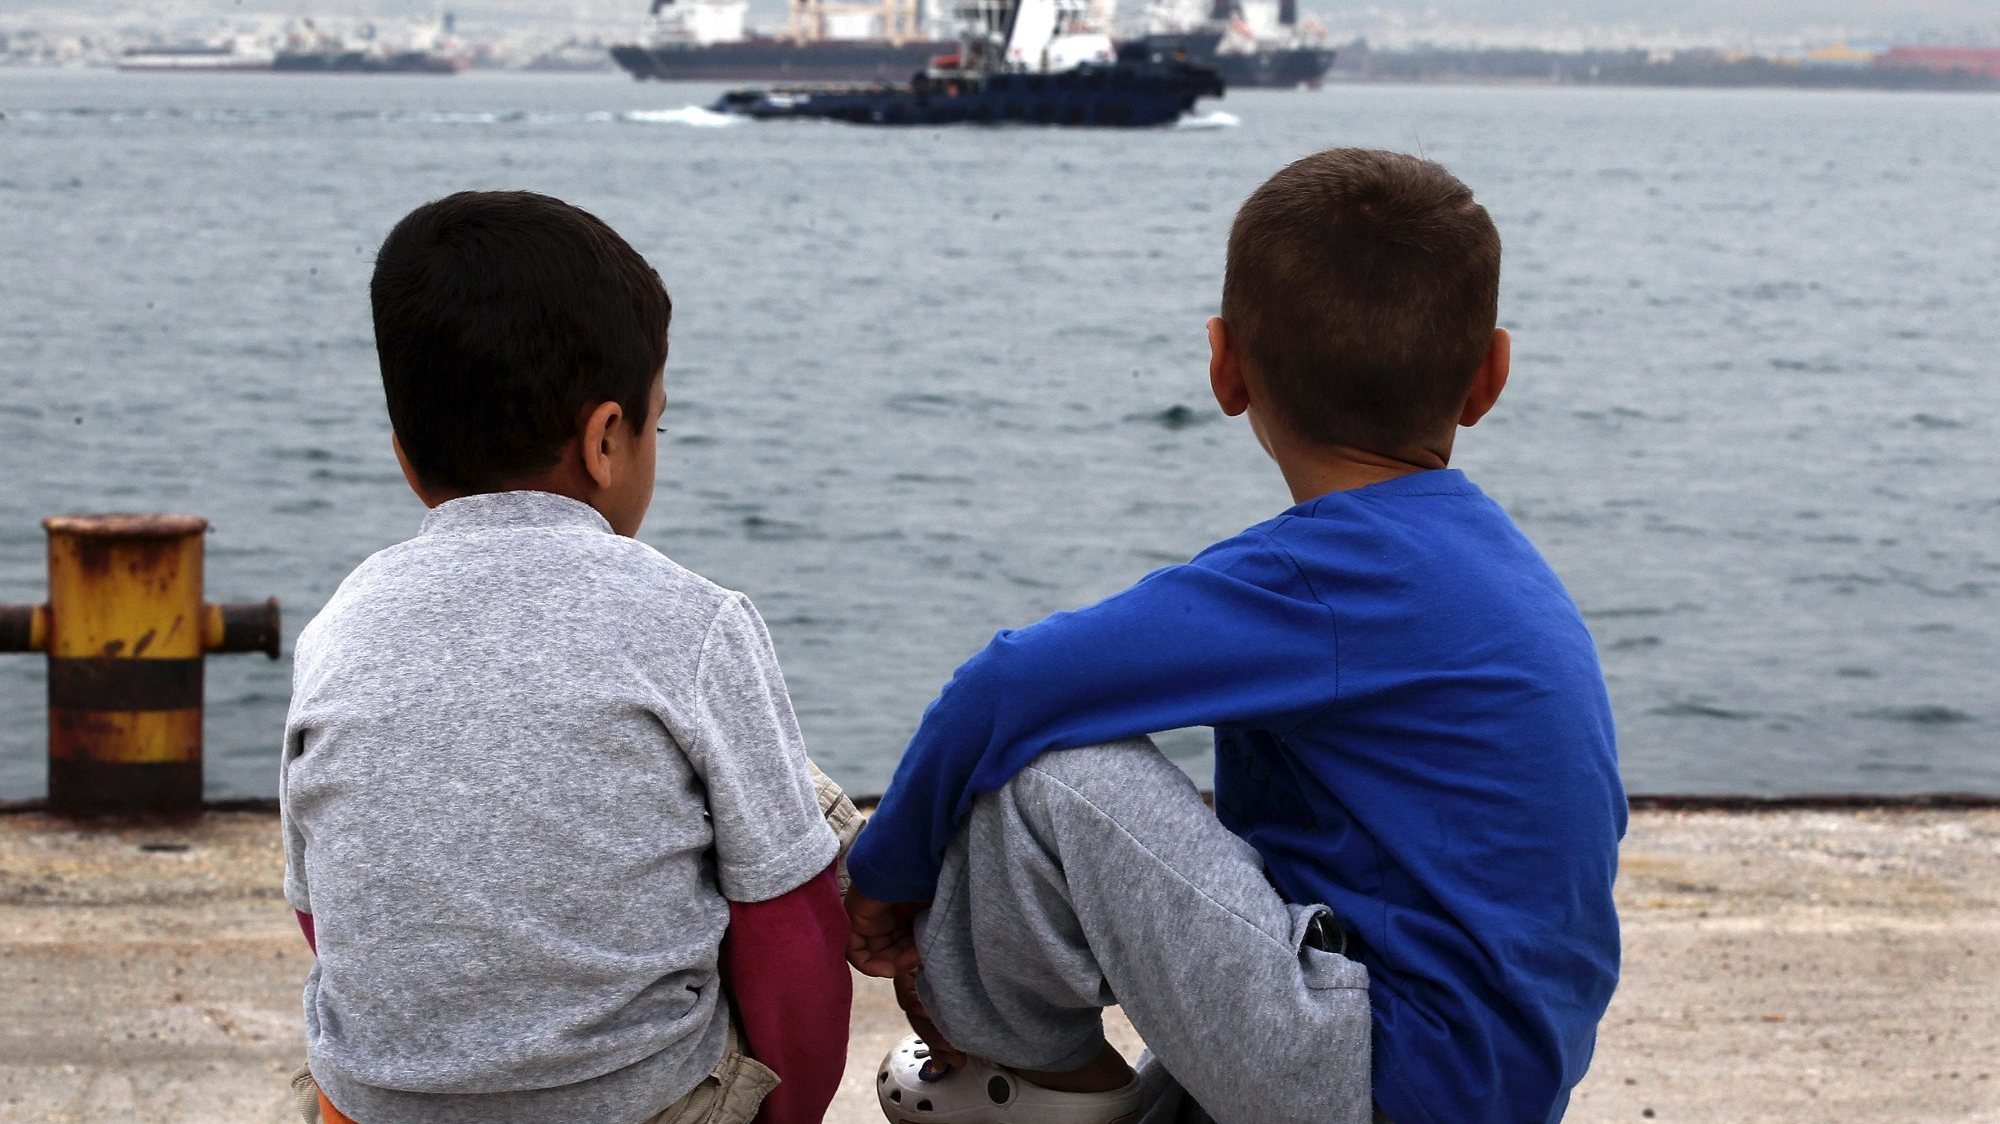 A Grécia foi criticada por ter menores em campos sem proteção